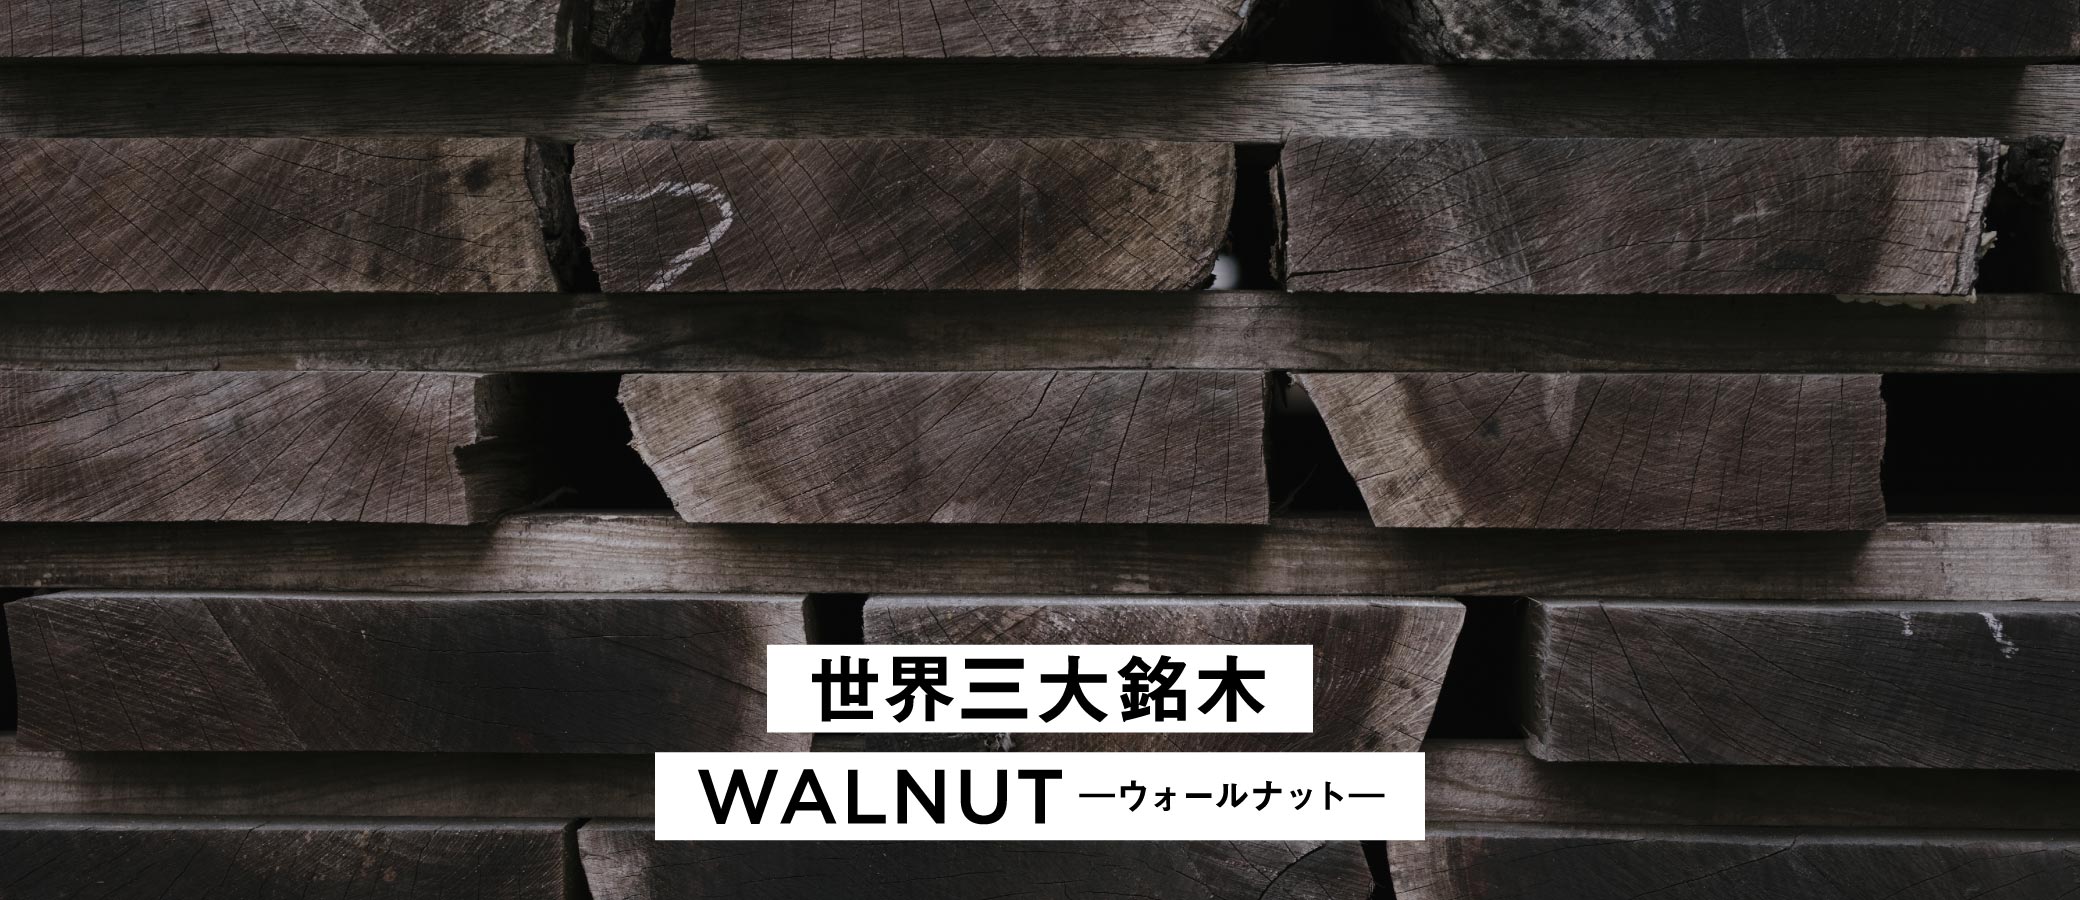 世界三大銘木のひとつであるウォールナット。SOLID大阪店の家具は、無垢のウォールナットを贅沢に使用しています。